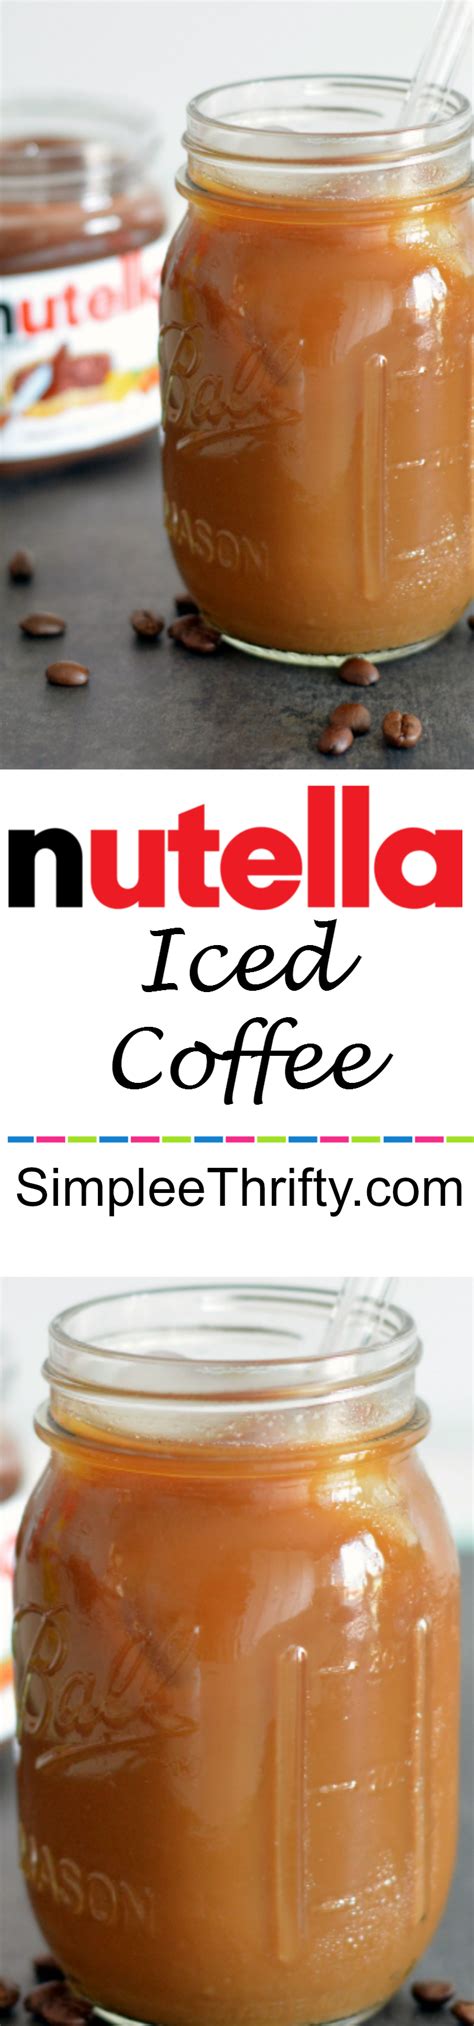 Nutella Iced Coffee Nutella Iced Coffee Coffee Recipes